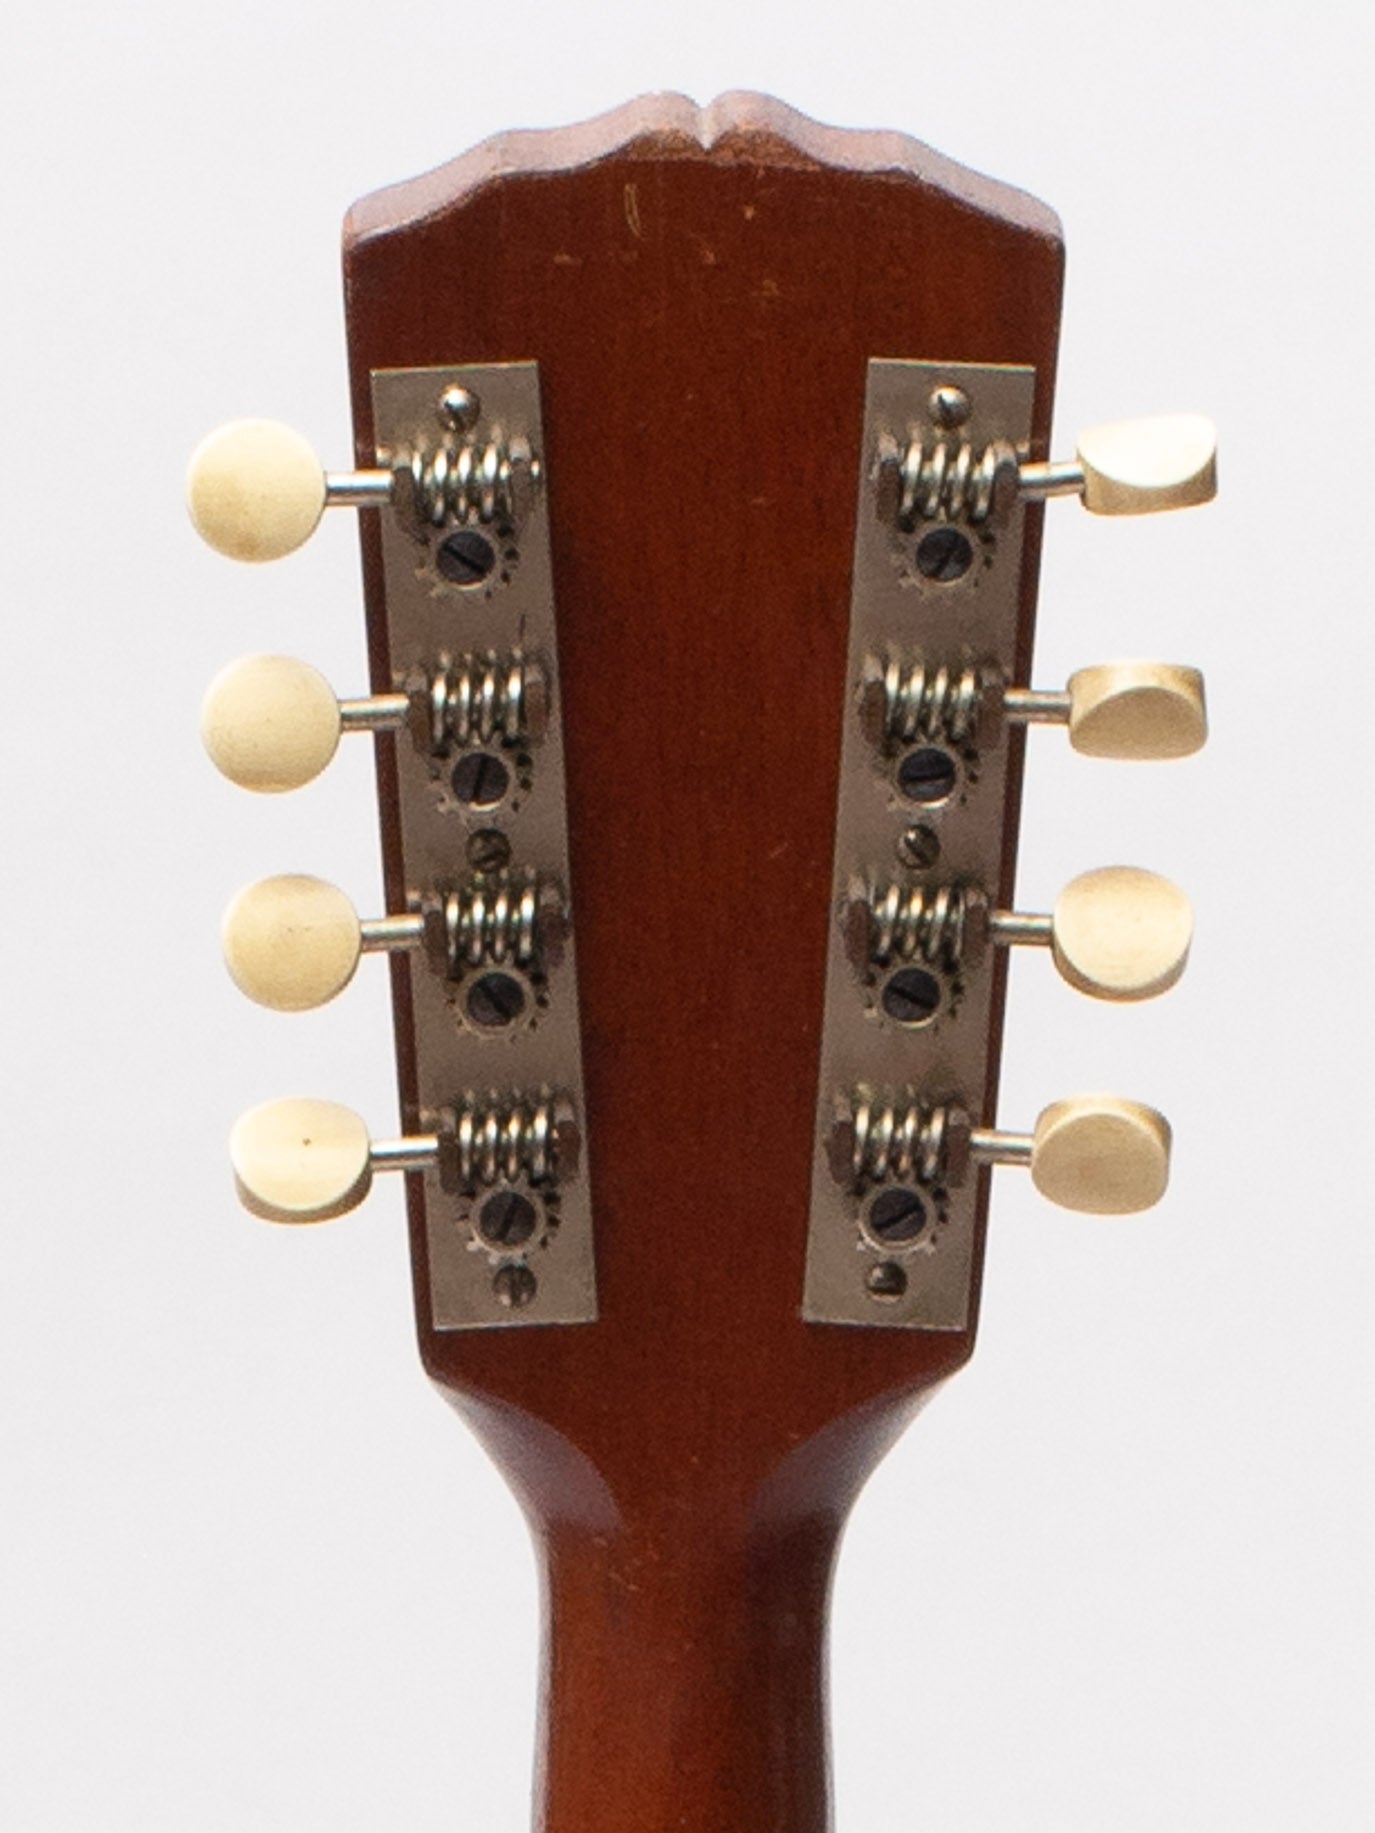 1926 Gibson A